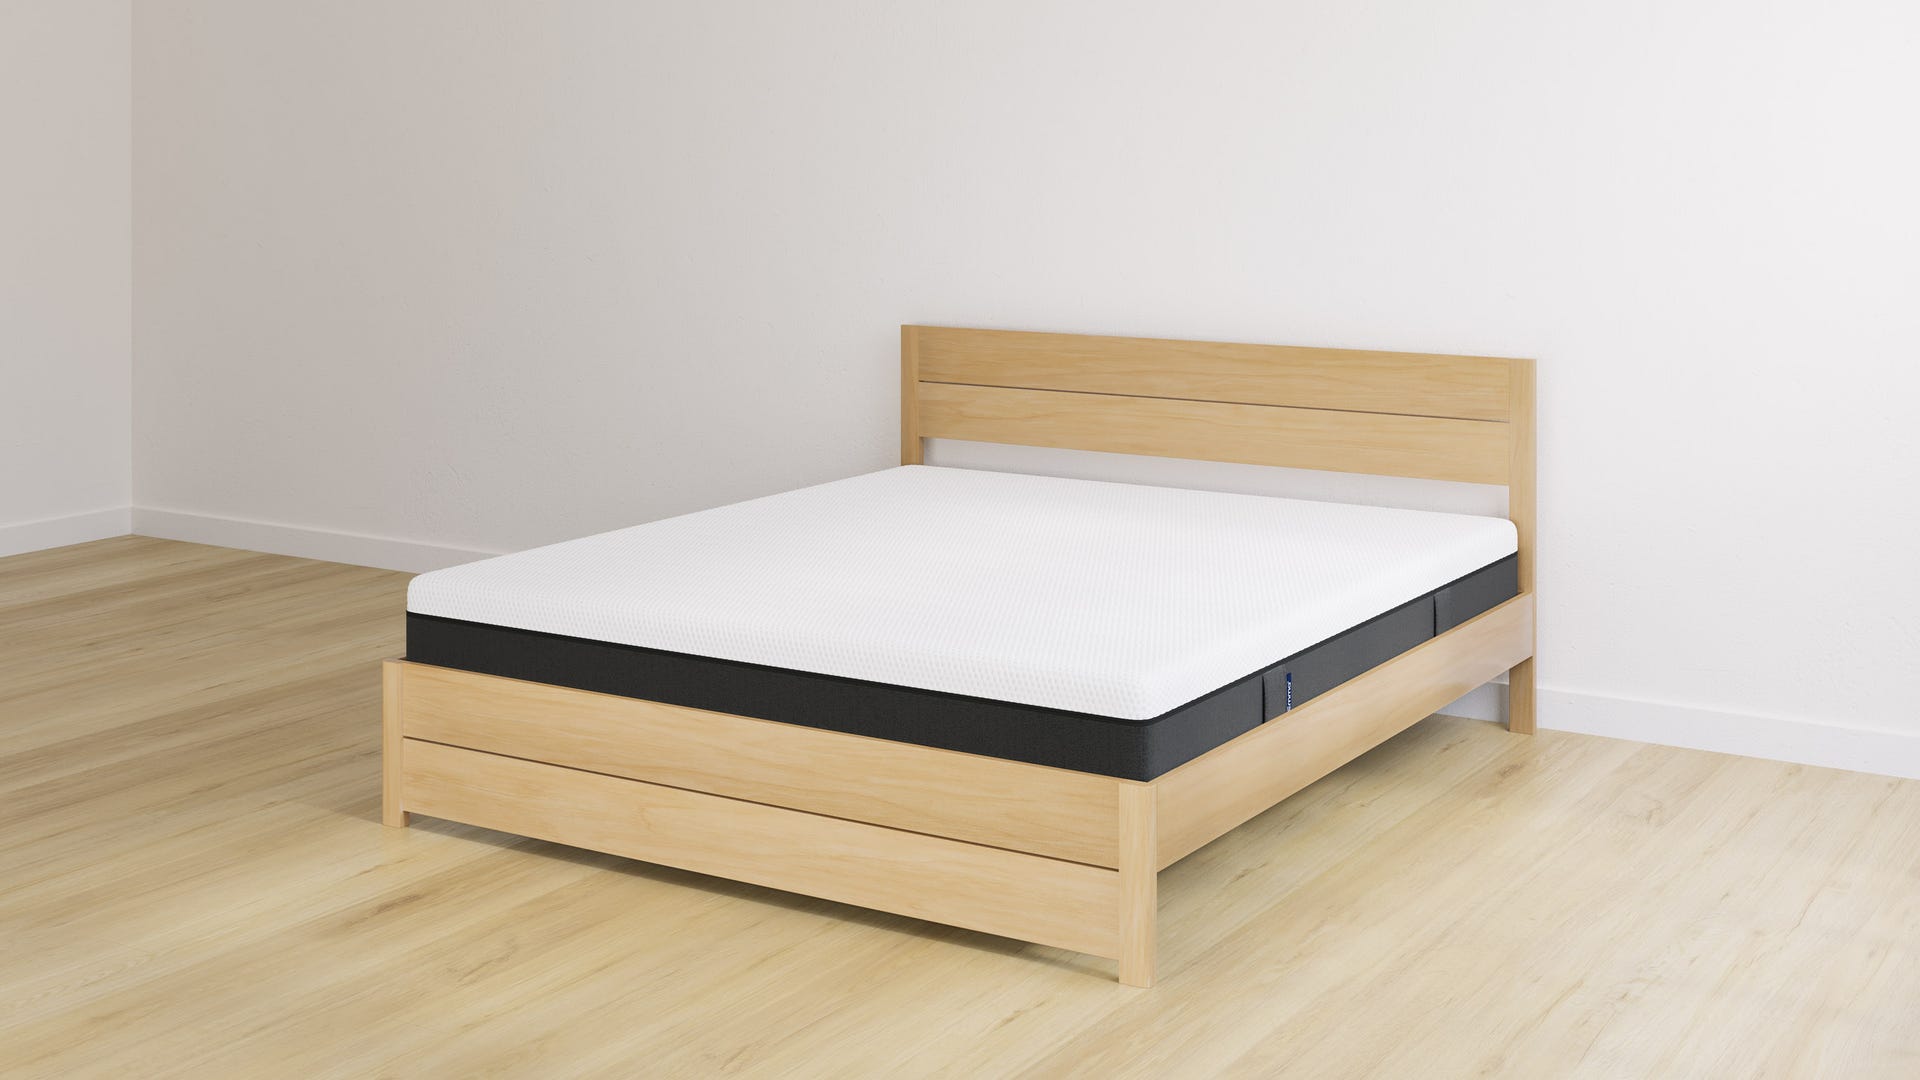 Wooden_bed_double_headboard_mattress_plus.jpg